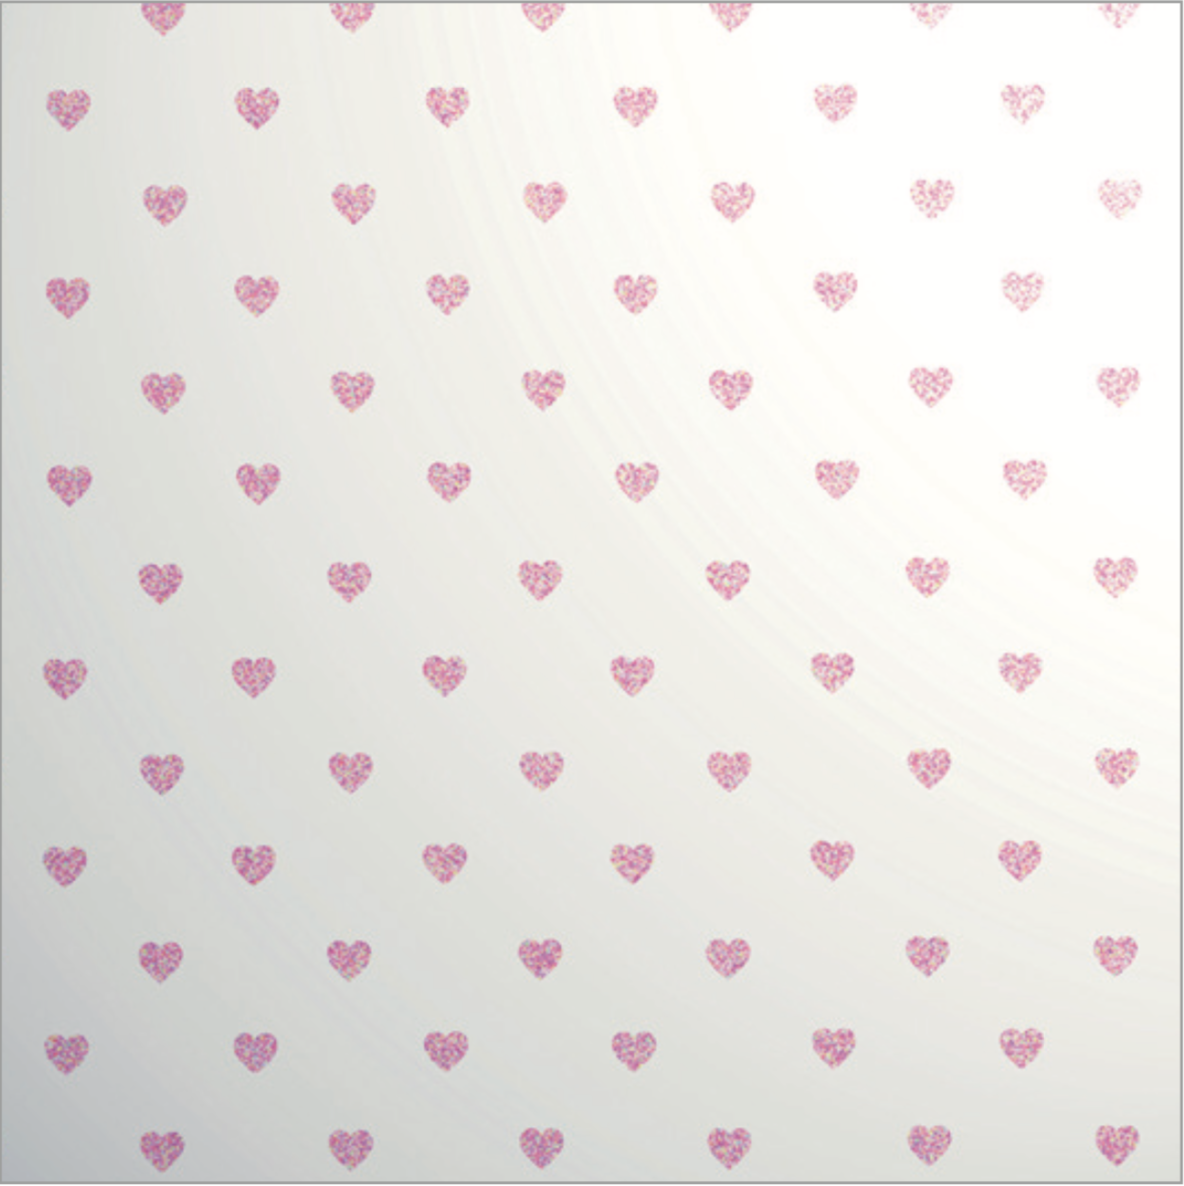 Glitter Les Petits Mini Heart Pink on White